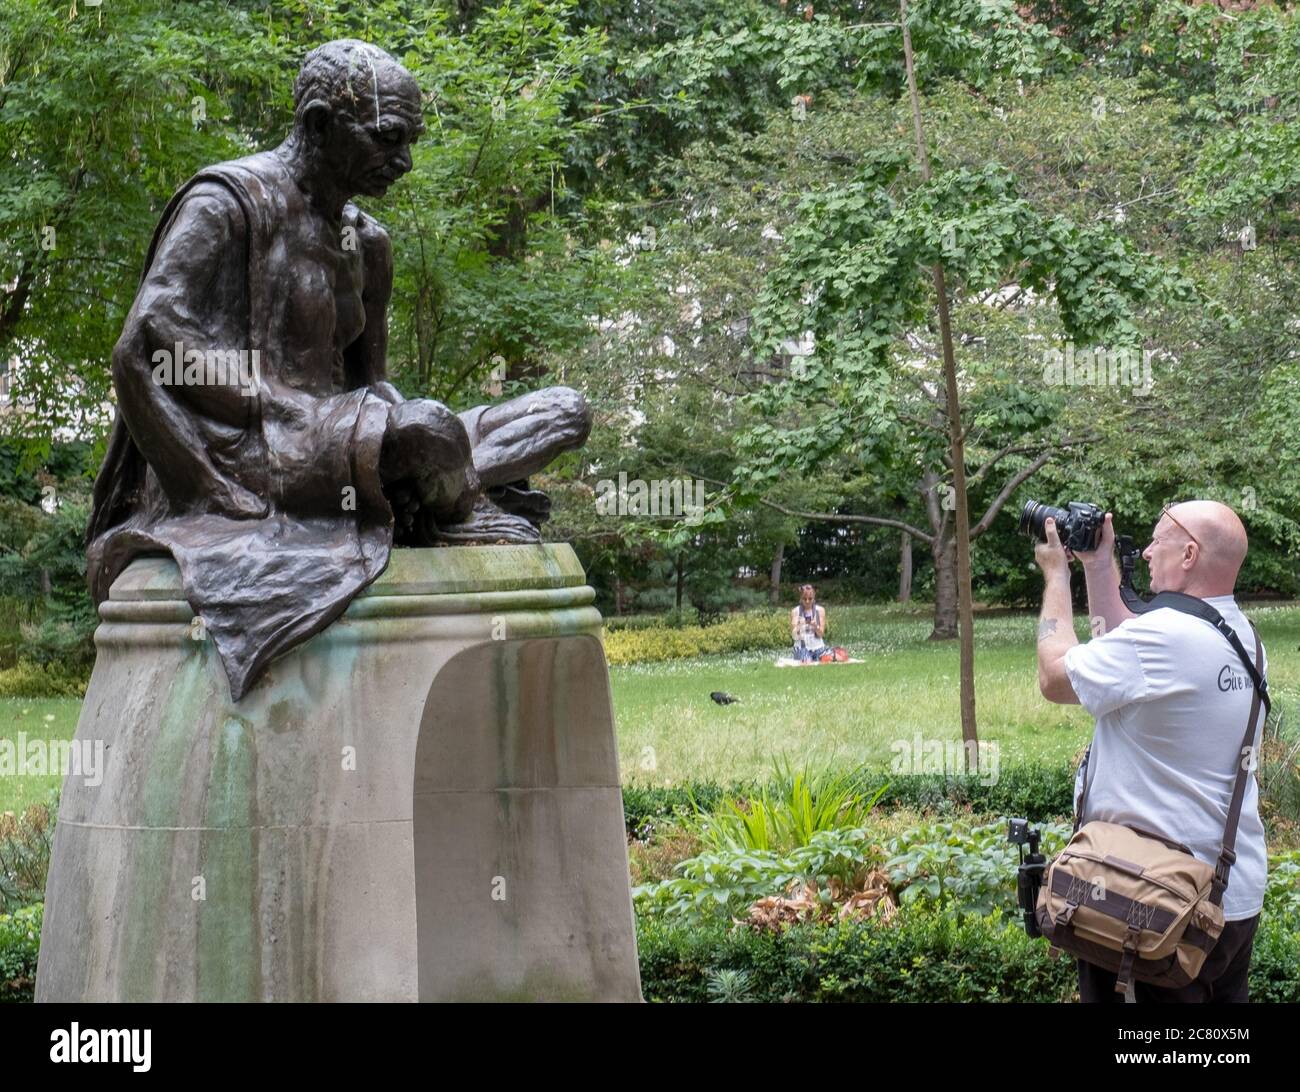 LONDRES, ROYAUME-UNI - 09 juillet 2019 : une statue de Gandhi par Fredda Brilliant à Tavistock Square, Londres étant photographiée par un touriste Banque D'Images